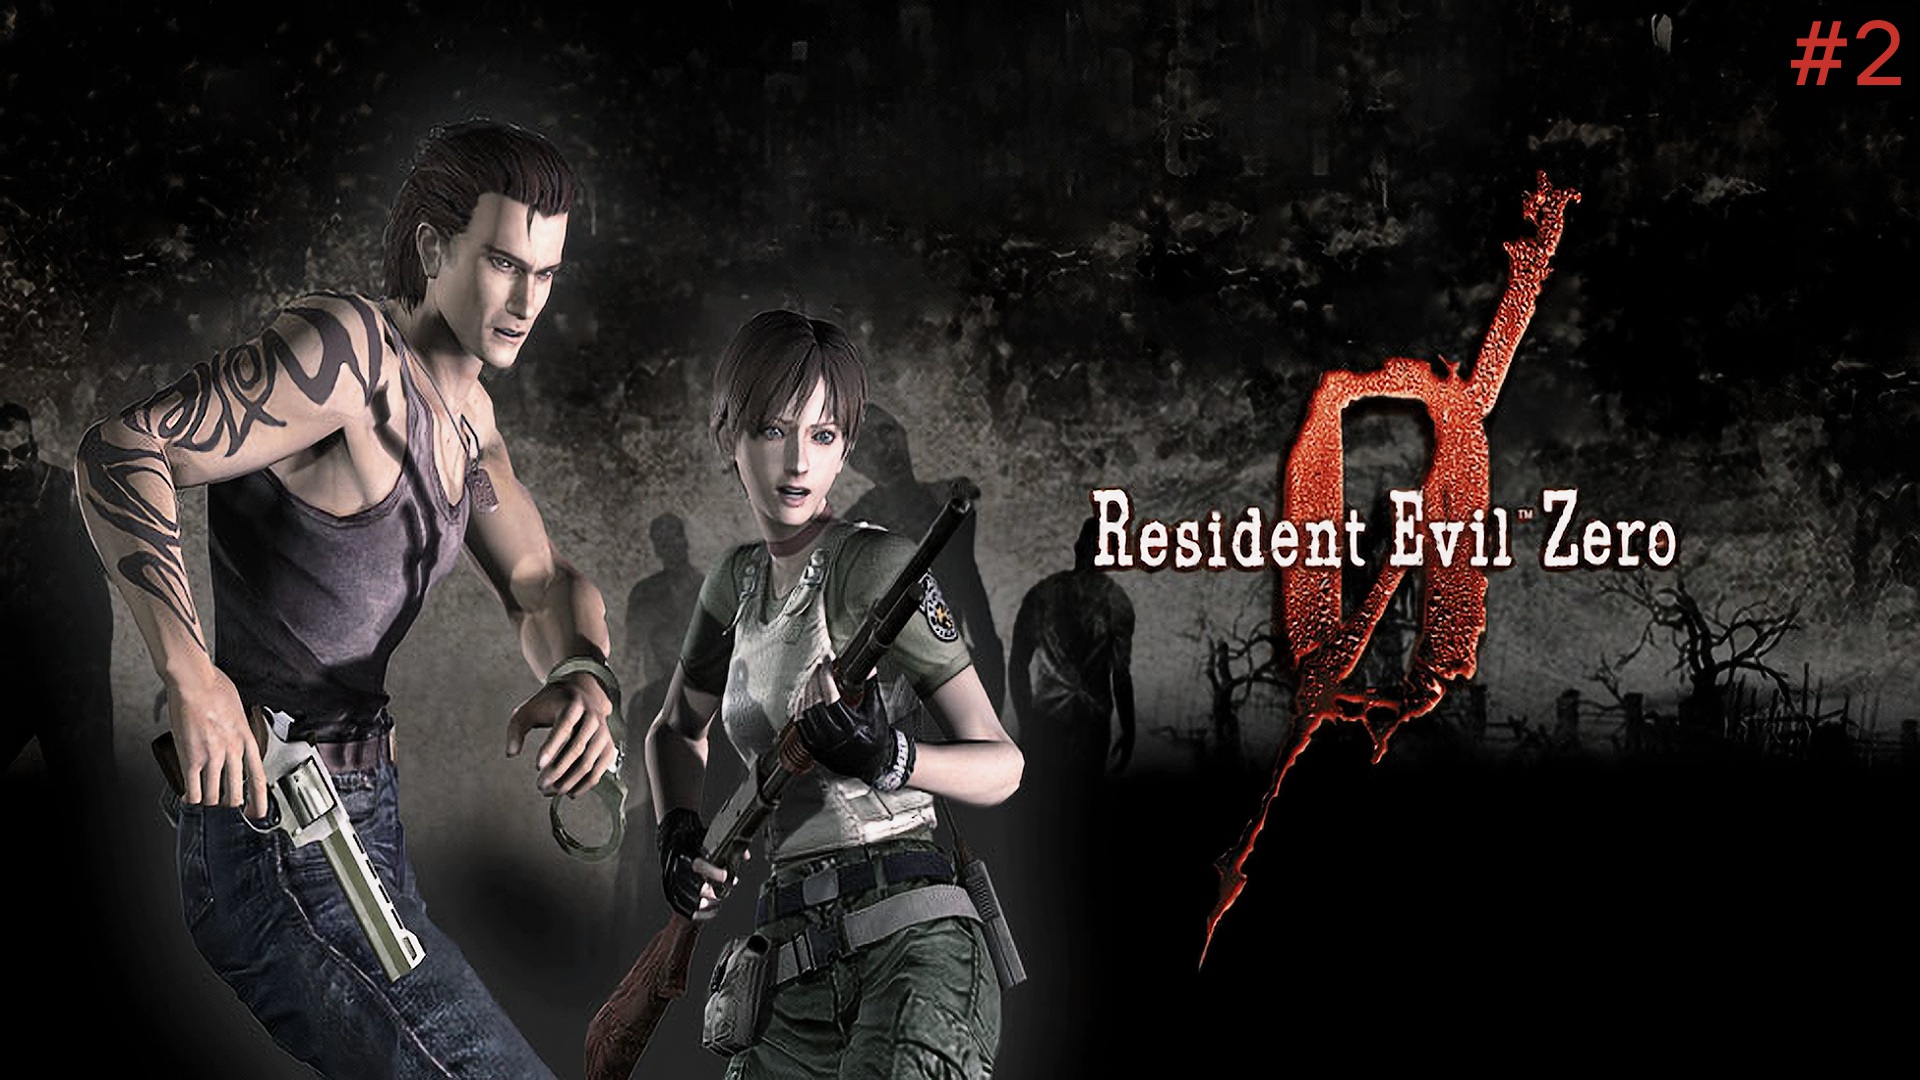 "ВСПОМИНАЯ КЛАССИКУ" Resident Evil Zero HD Remaster прохождение на Русском Часть#2|Walkthrough|Стрим